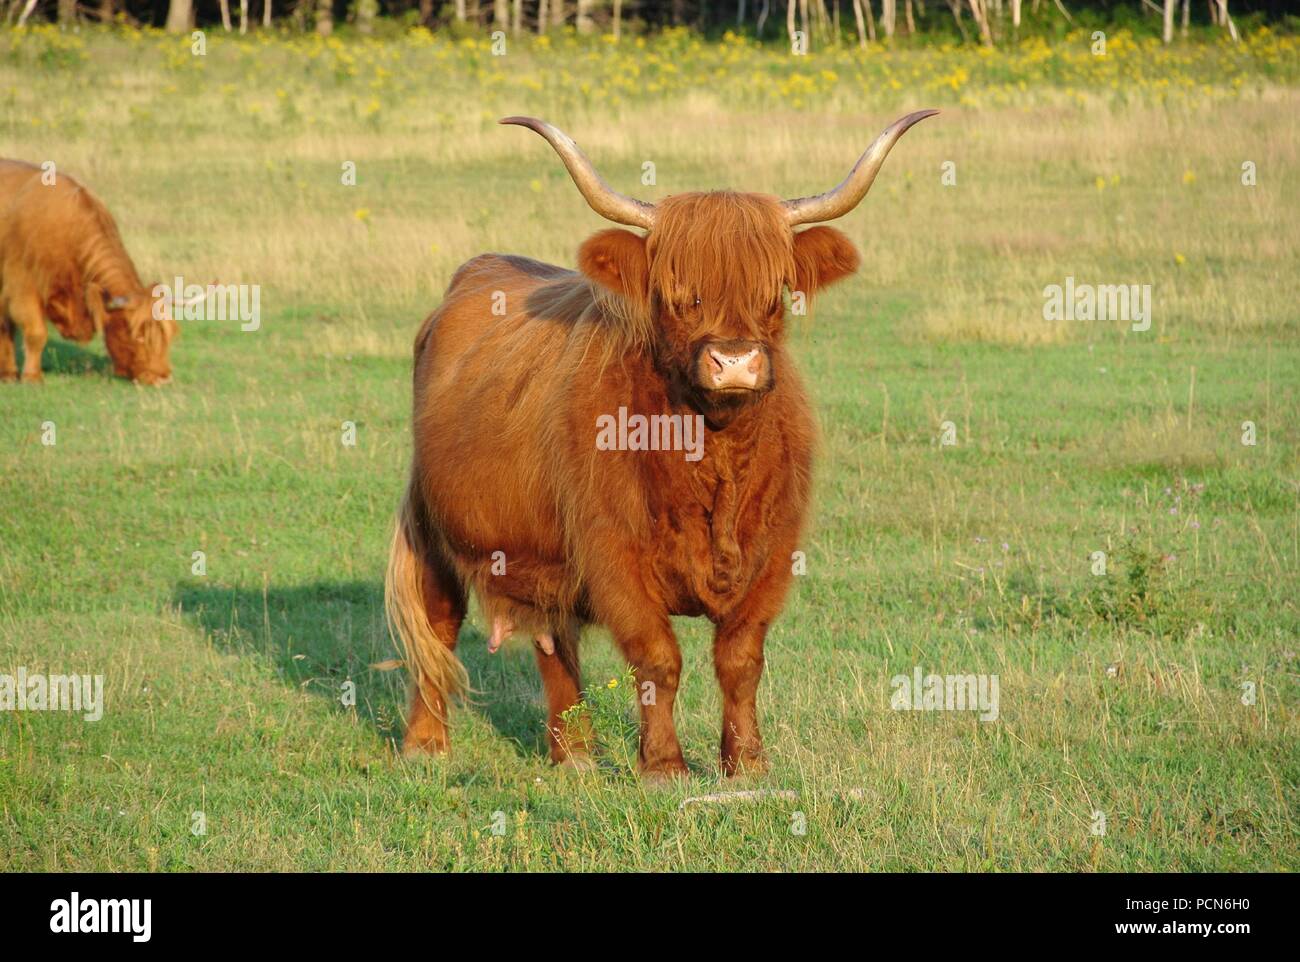 Une vache Highland brun poilu avec de longues cornes debout sur l'herbe verte sur l'île, Canada Banque D'Images